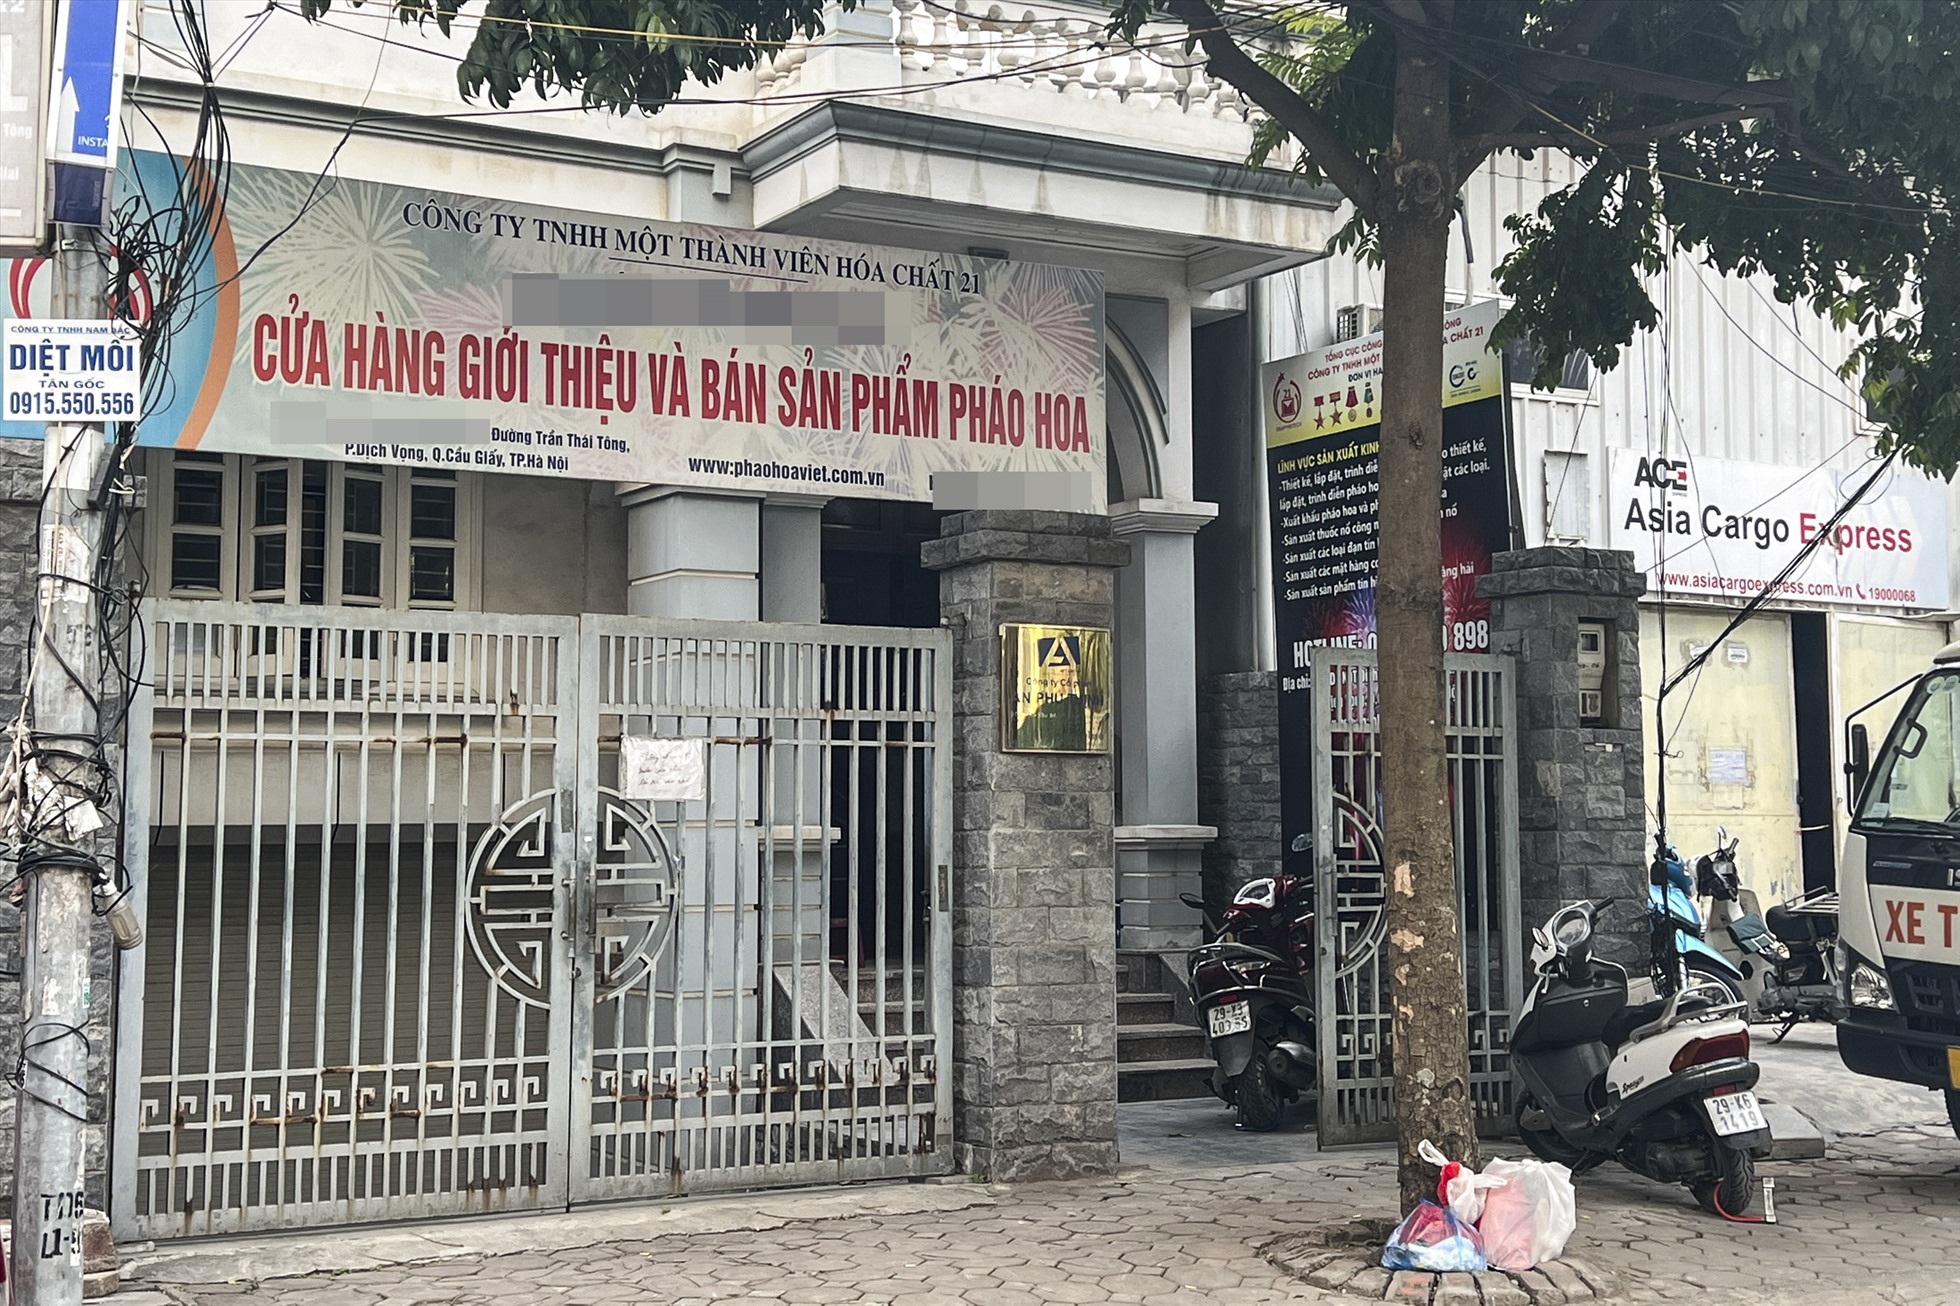 Cửa hàng kinh doanh pháo hoa ở khu đô thị Dịch Vọng. Ảnh: TG